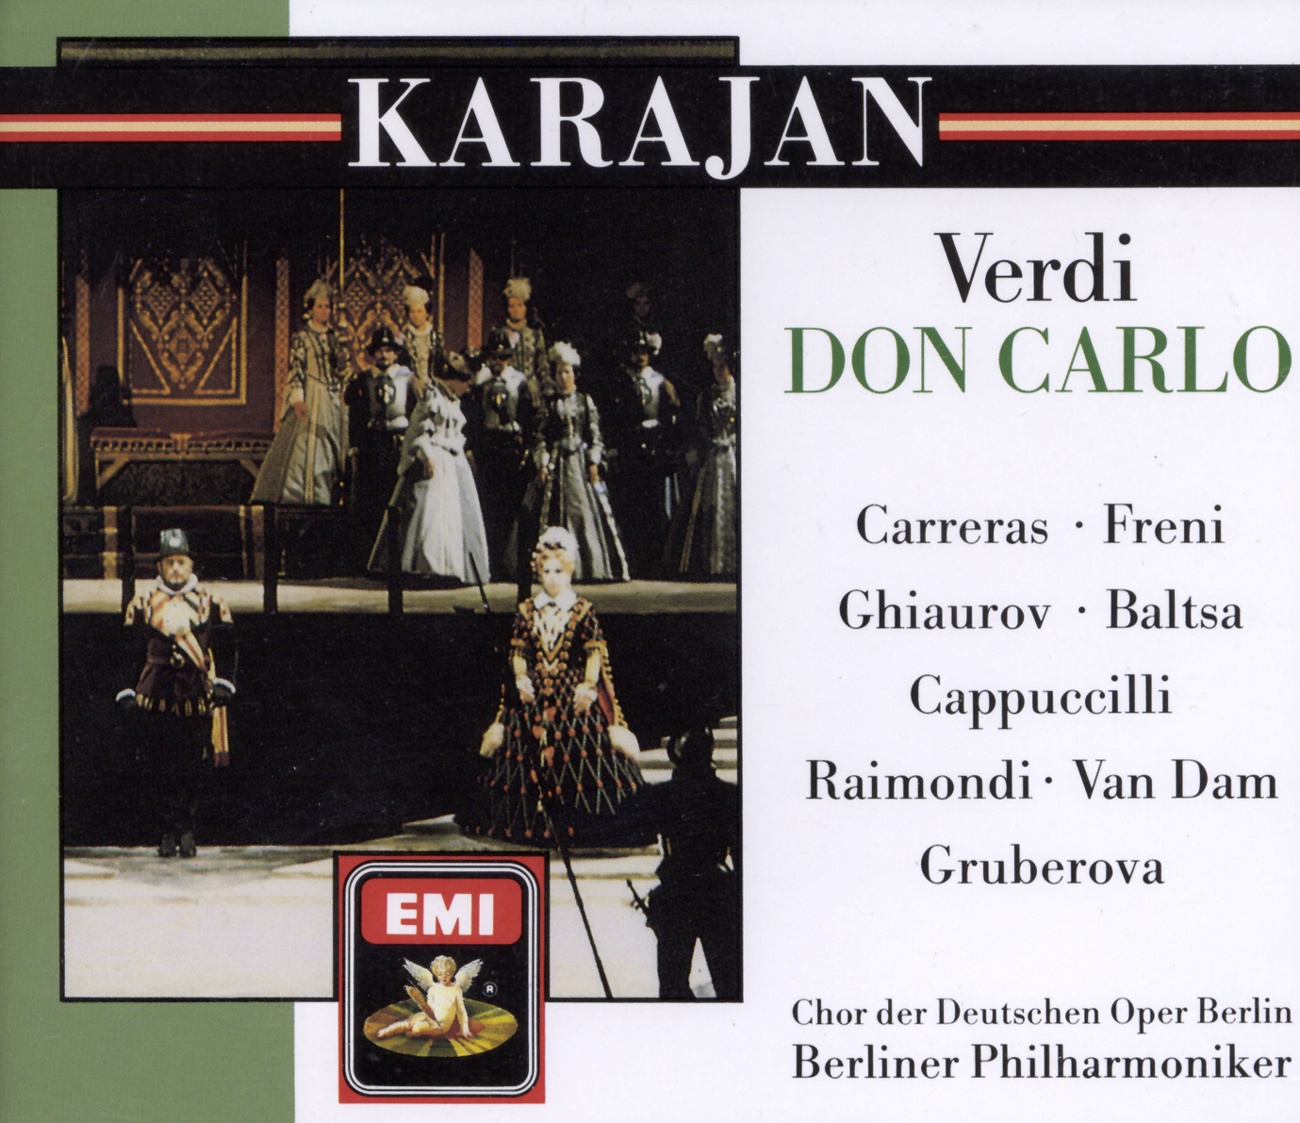 Don Carlo (1884 4 Act Version) (1988 Digital Remaster), ATTO TERZO/ACT 3/DRITTER AKT/TROISIEME ACTE, Scena seconda/Scene 2/Zweite Szene/Deuxième Scène: Per me giunto è il dì supremo (Rodrigo)